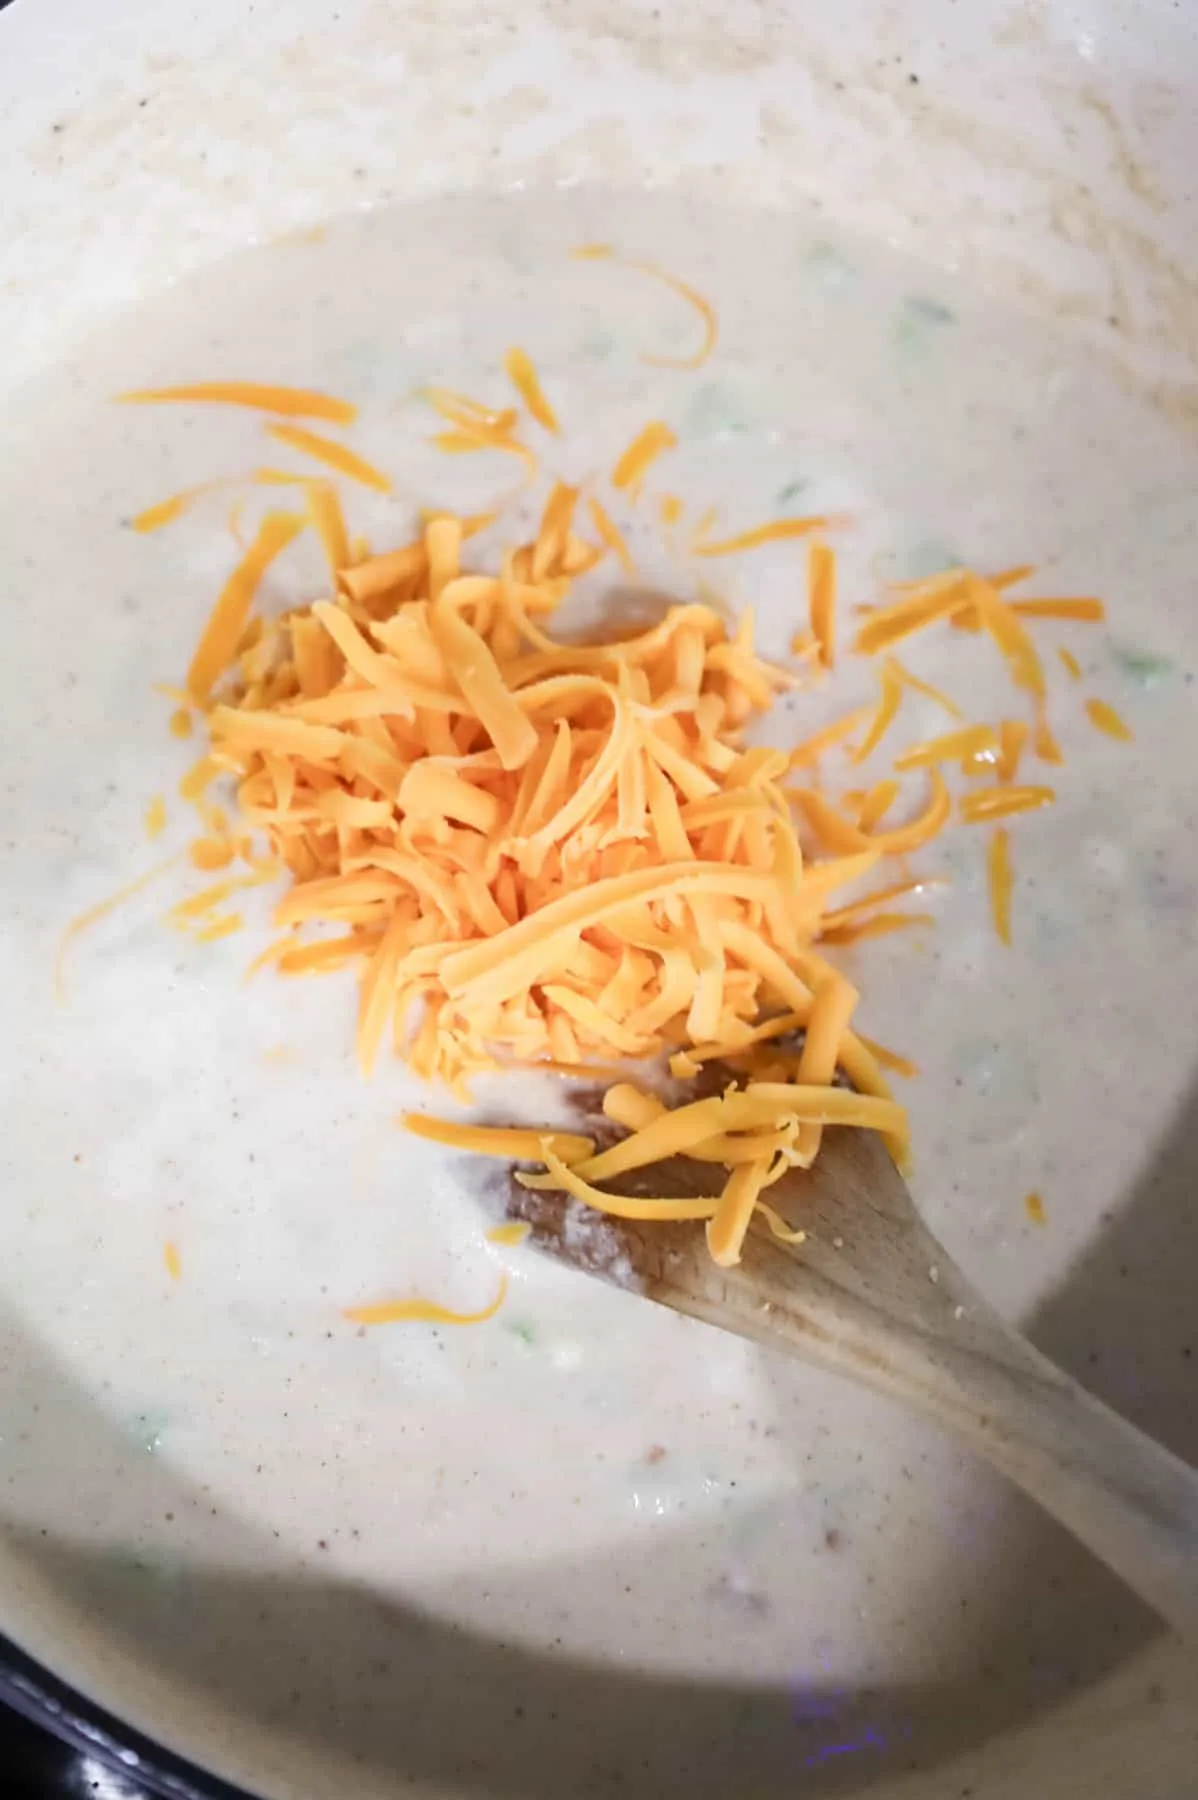 shredded cheddar cheese added to cauliflower soup